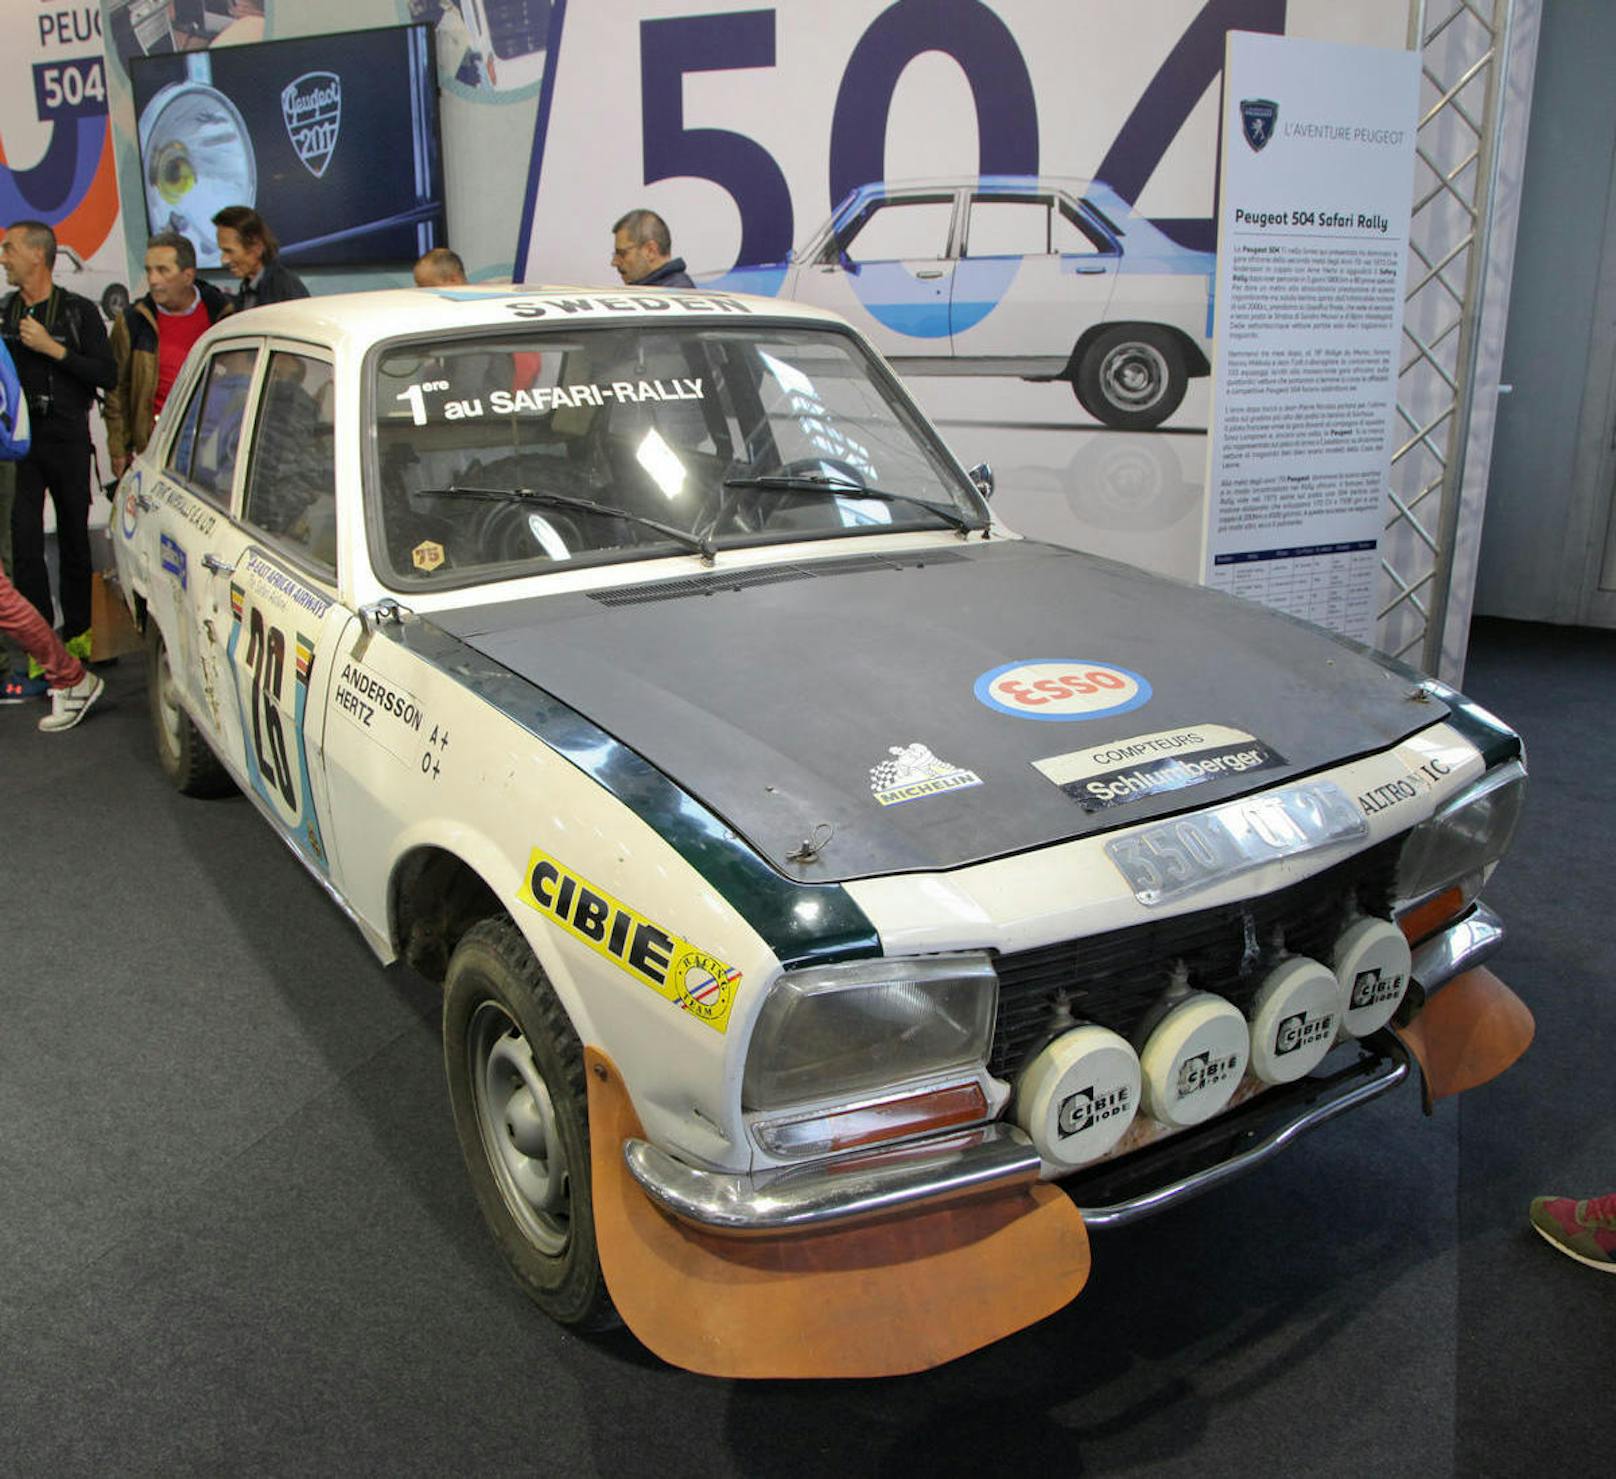 Der Peugeot 504 war auch ein Rallye-Sieger, hier der Wagen von 1975, der die Safari-Rallye gewann.